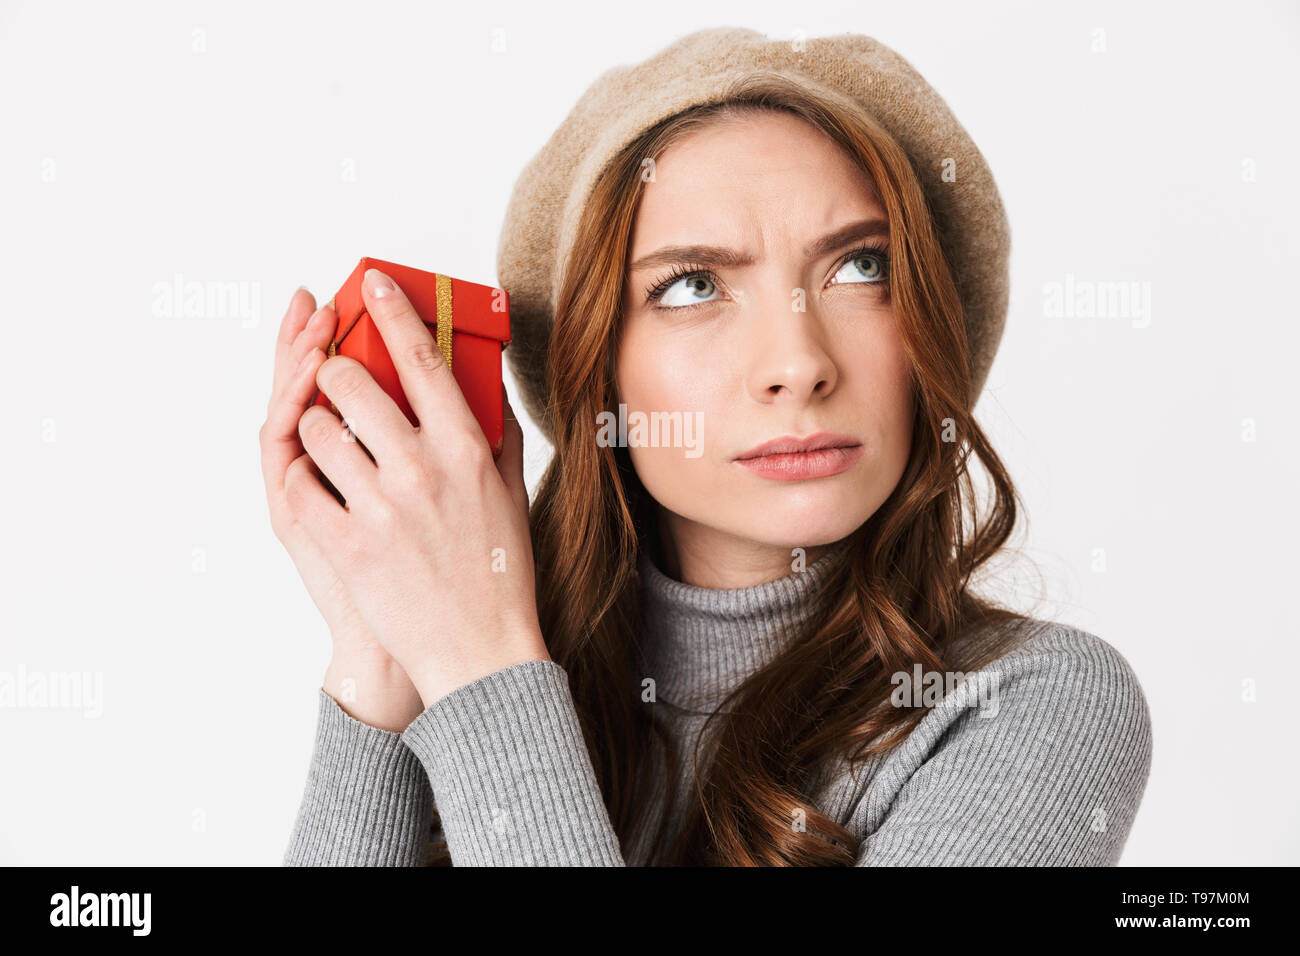 Foto di concentrato di donna 30s indossando hat azienda confezione regalo rossa isolate su sfondo bianco Foto Stock